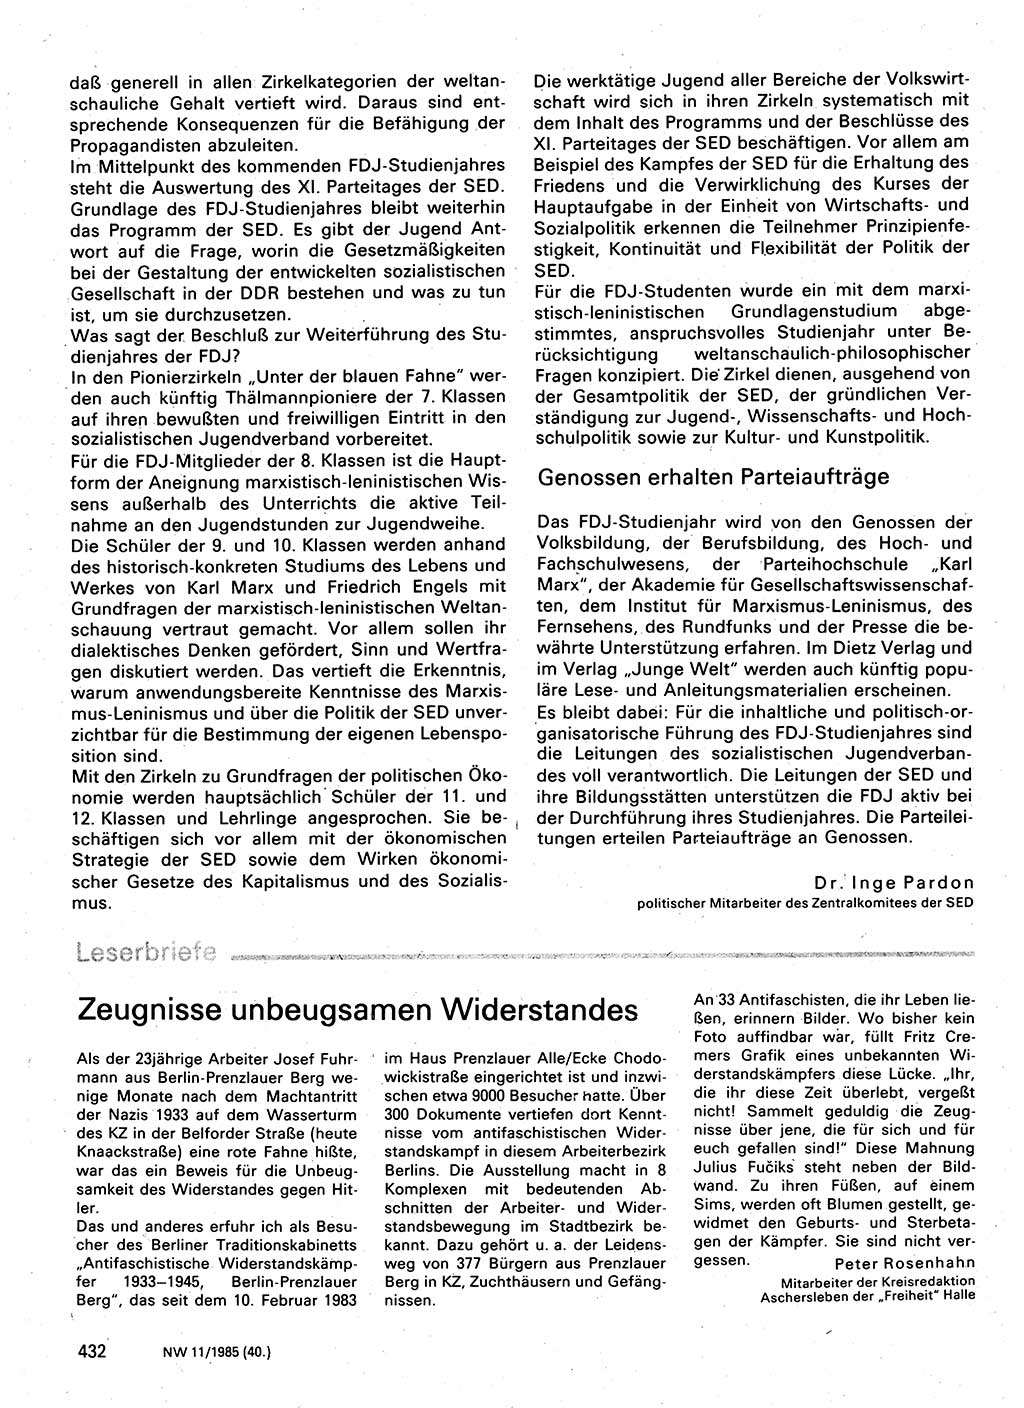 Neuer Weg (NW), Organ des Zentralkomitees (ZK) der SED (Sozialistische Einheitspartei Deutschlands) für Fragen des Parteilebens, 40. Jahrgang [Deutsche Demokratische Republik (DDR)] 1985, Seite 432 (NW ZK SED DDR 1985, S. 432)